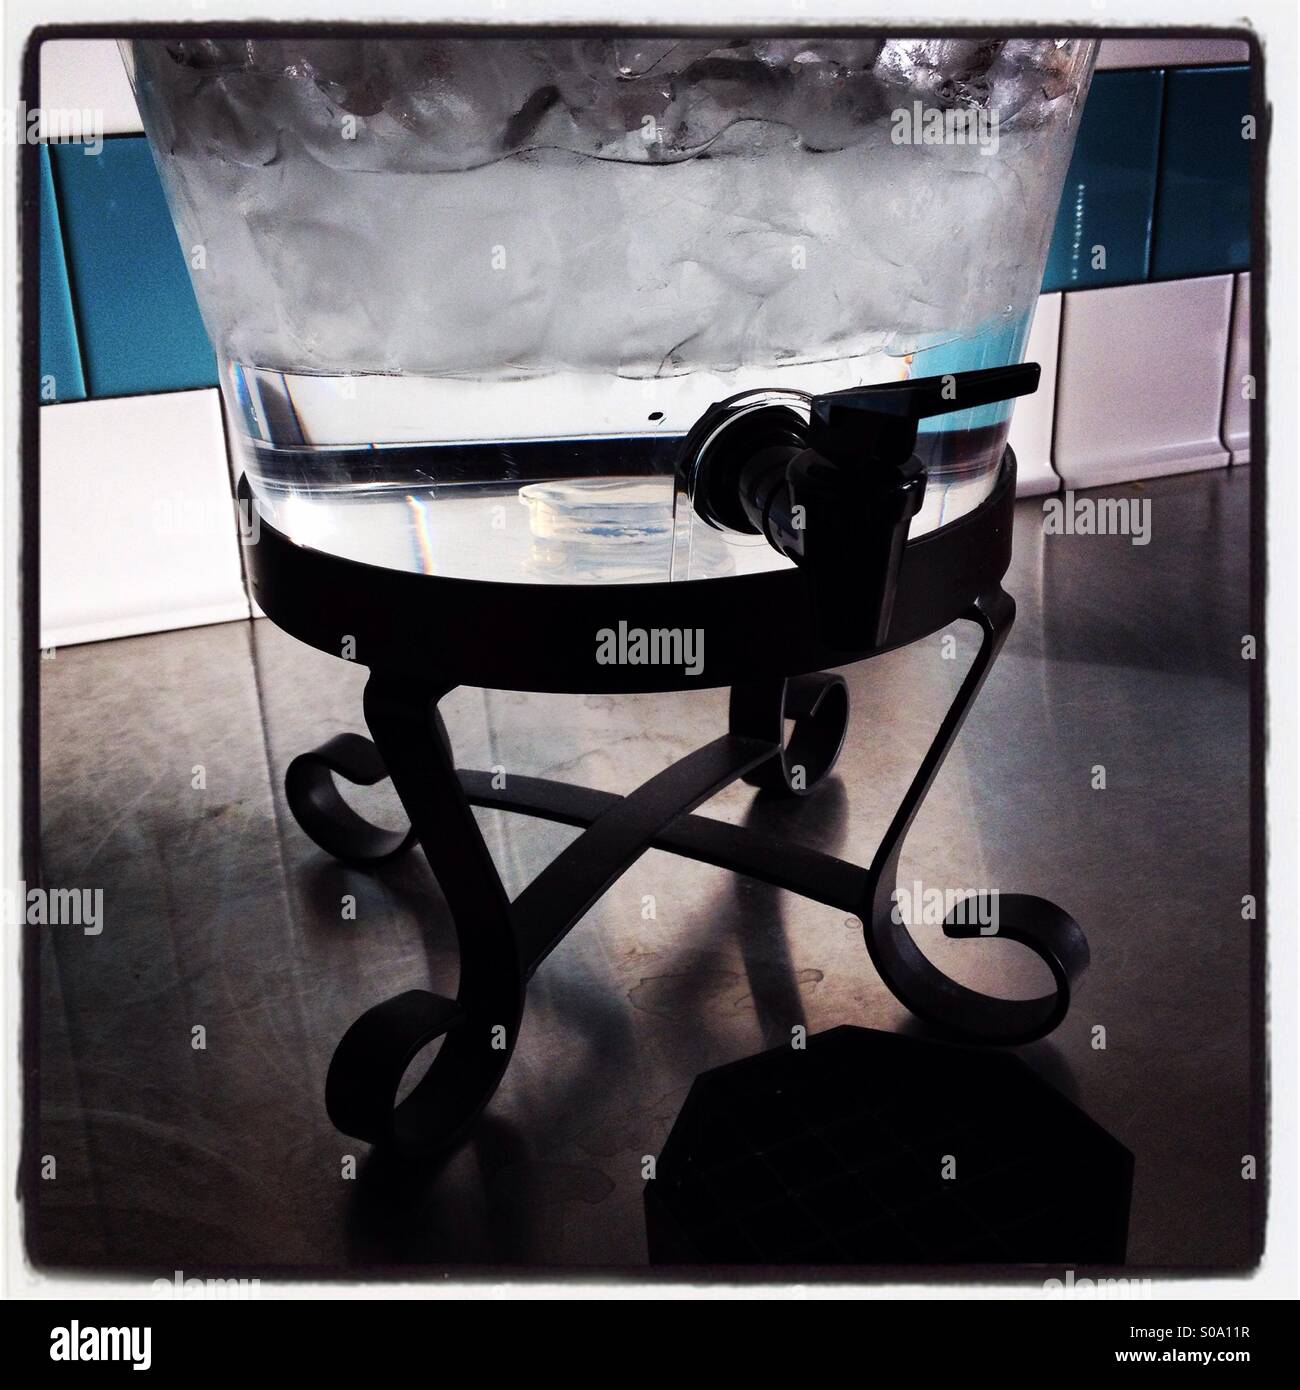 Acqua e ghiaccio in un'urna erogatore. Foto Stock